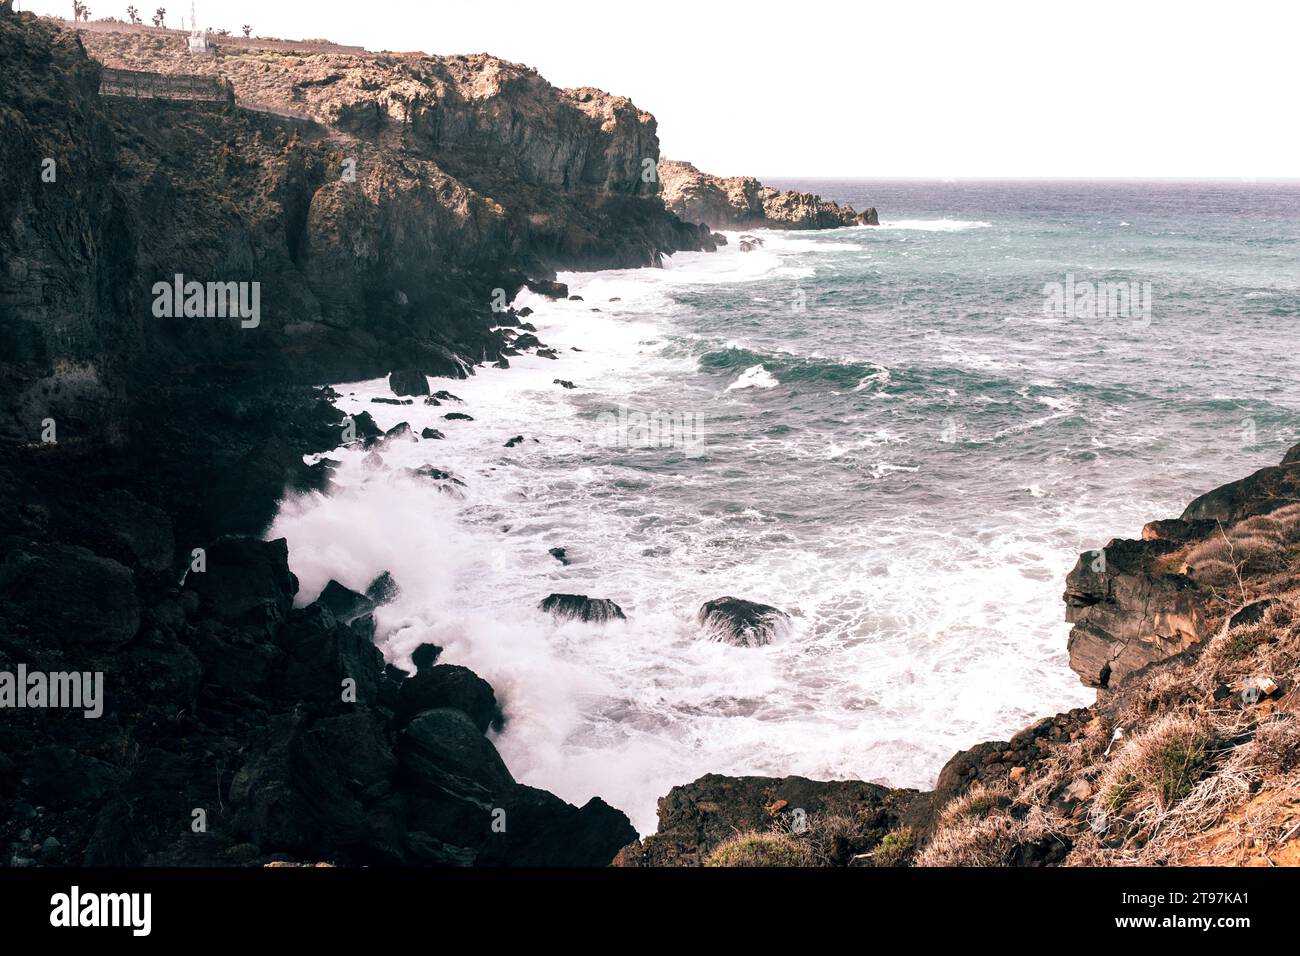 Acantilados costeros con olas rompiendo sobre rocas Foto de stock